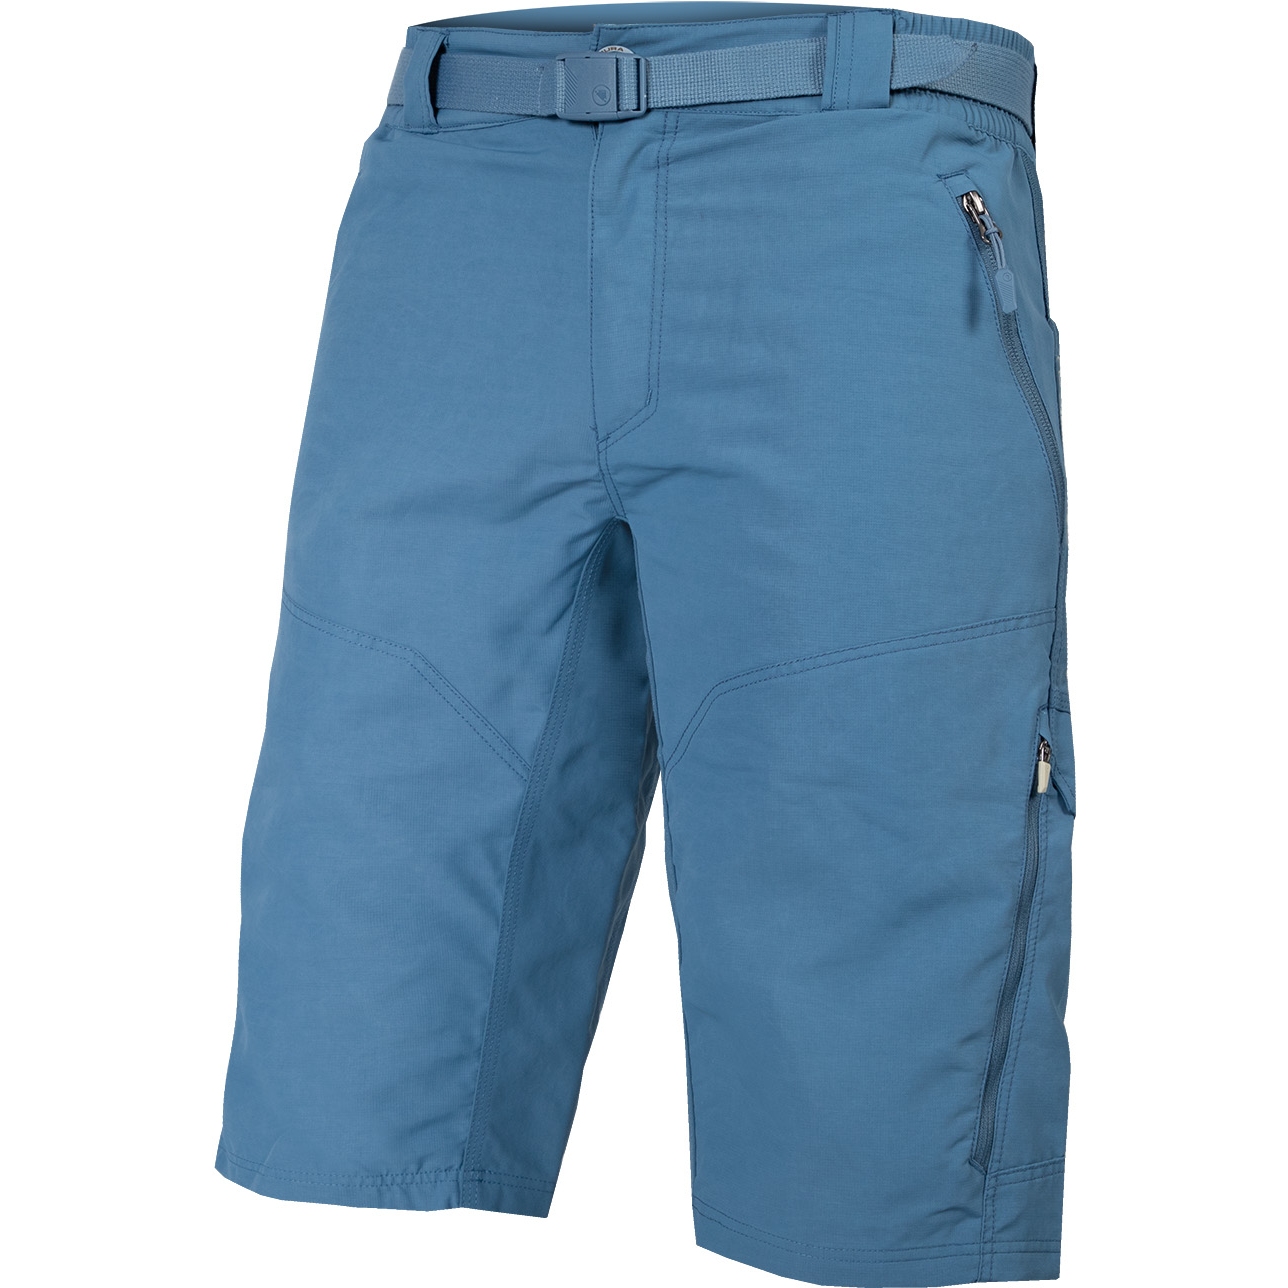 Produktbild von Endura Hummvee Shorts Herren - steel blue